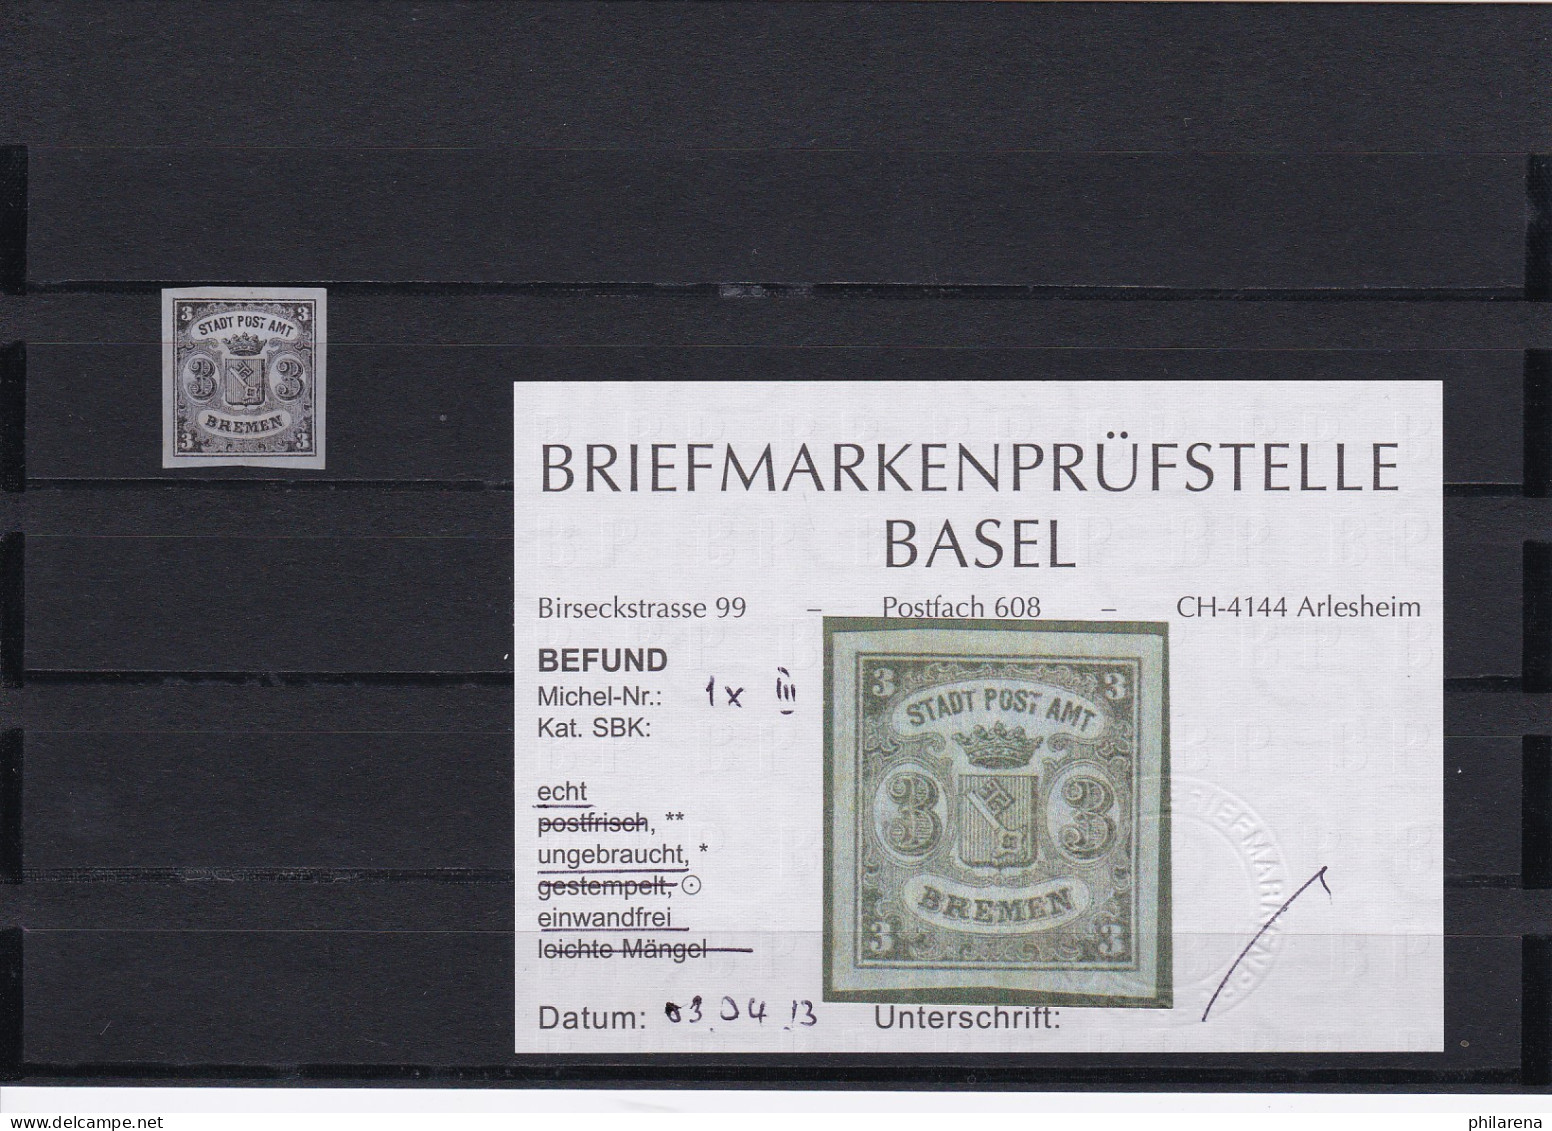 Bremen: Stadt Post Amt, Nr. 1x III, Ungebraucht - Bremen